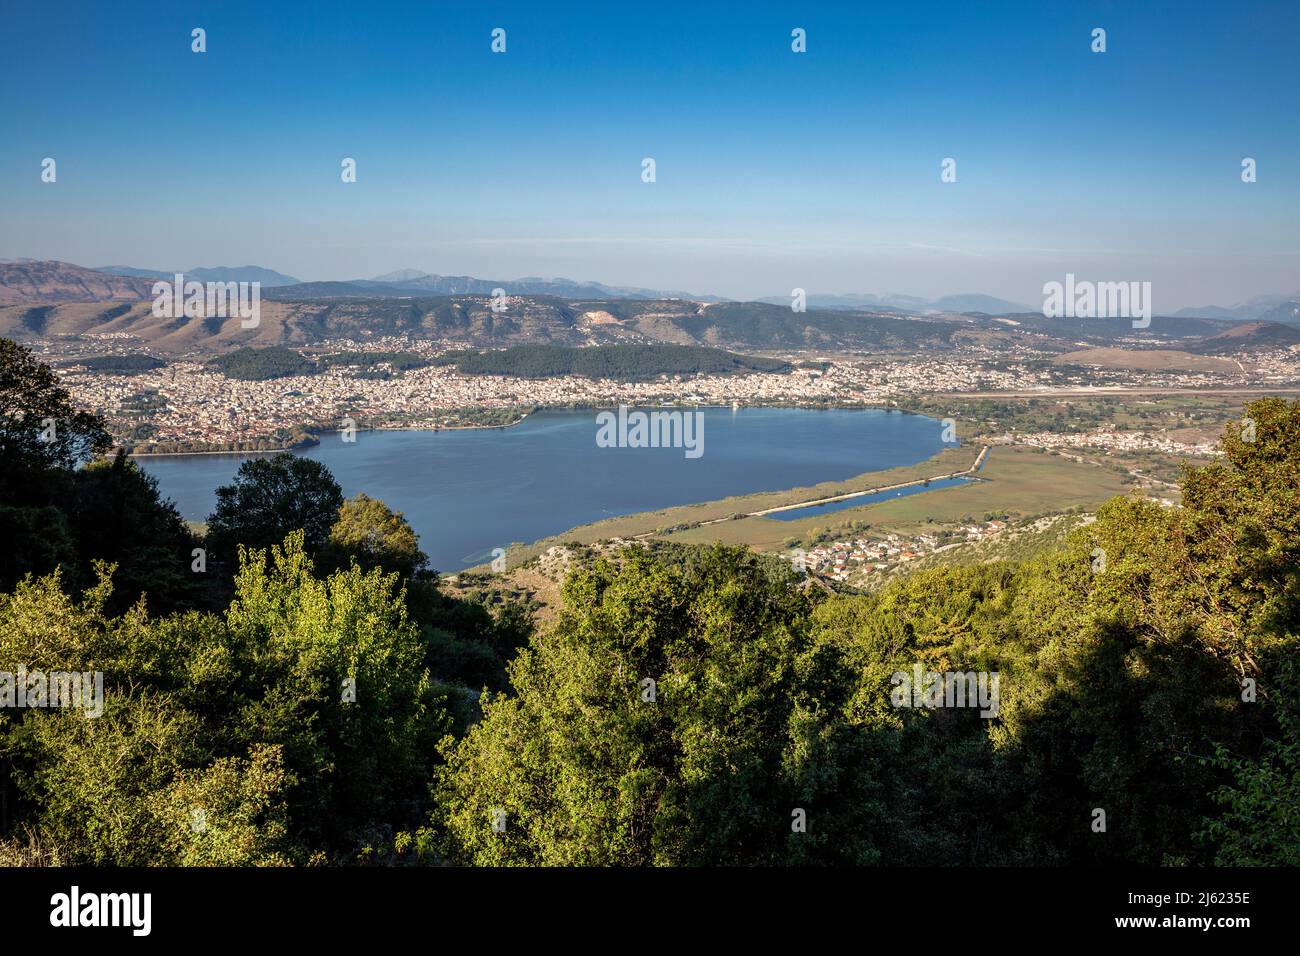 Greece, Epirus, Ioannina, View of Lake Pamvotida and surrounding city in summer Stock Photo